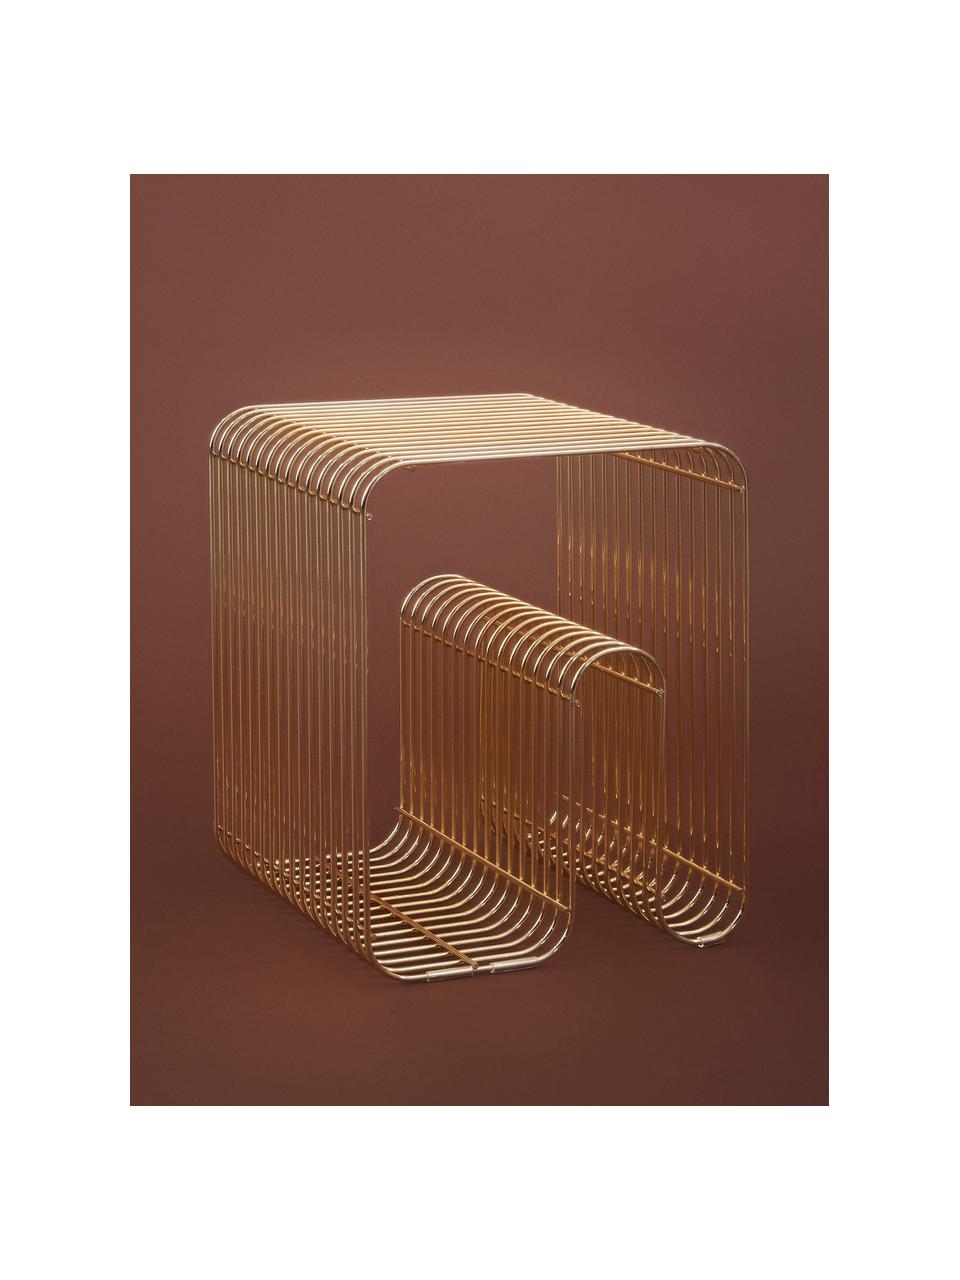 Metalen bijzettafel Curva met tijdschriftenhouder, Gecoat metaal, Goudkleurig, B 32 x H 43 cm